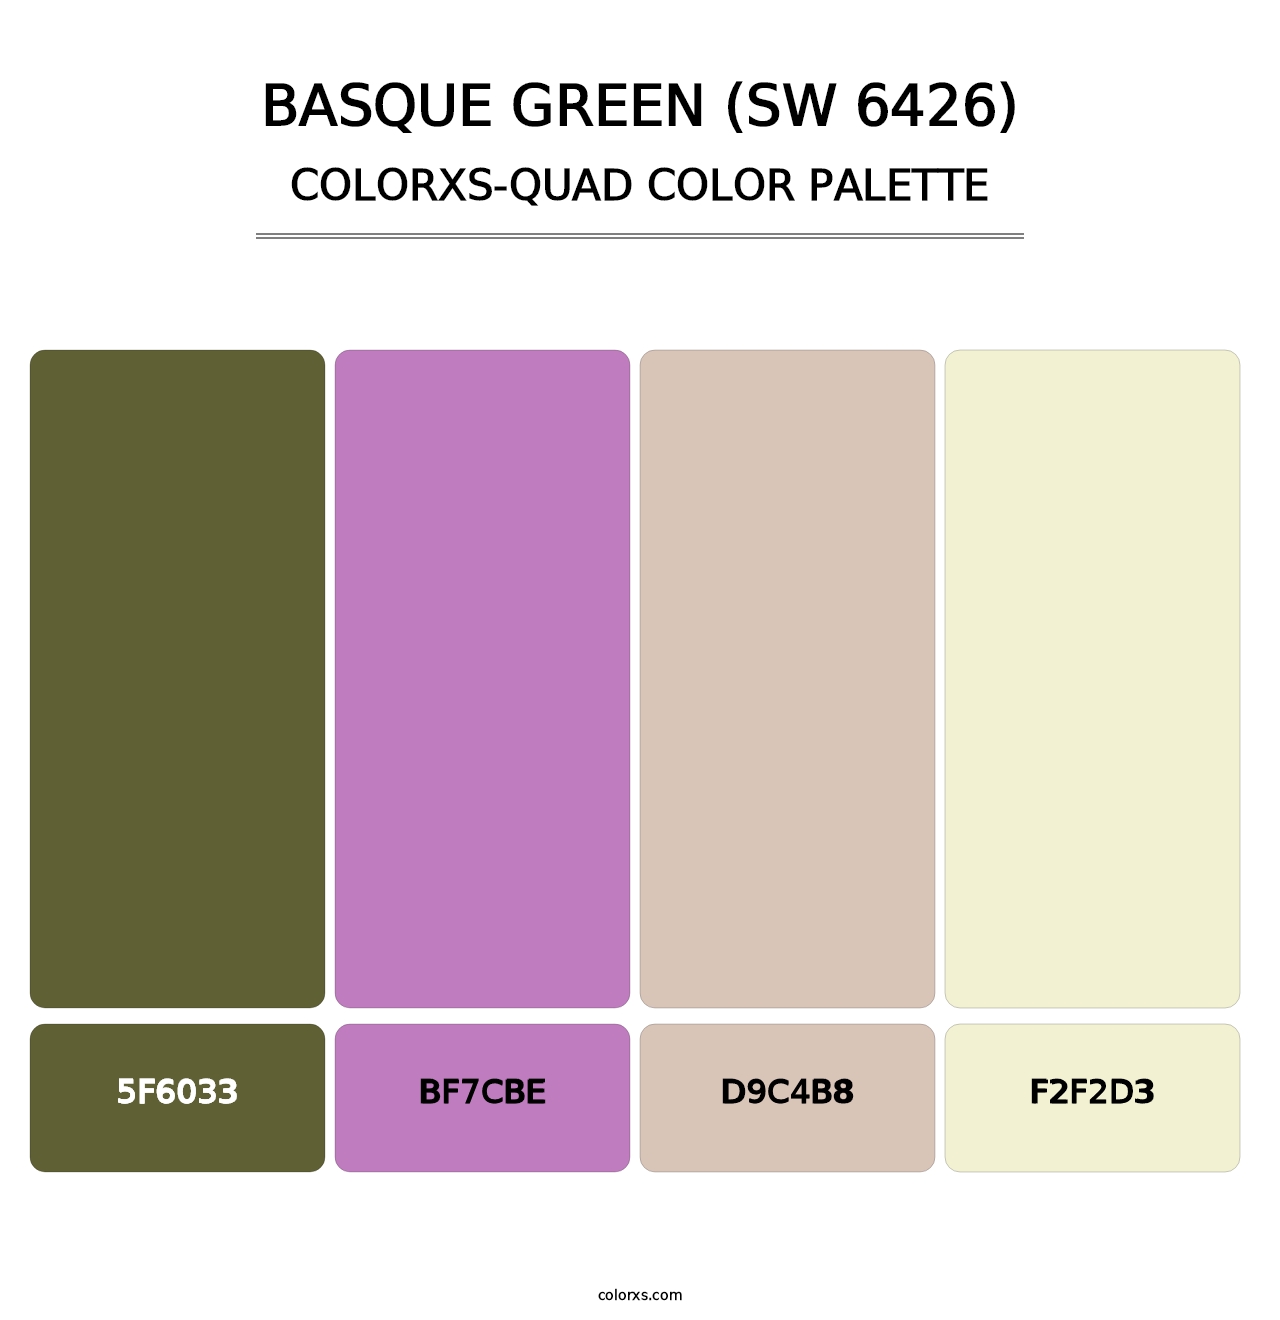 Basque Green (SW 6426) - Colorxs Quad Palette